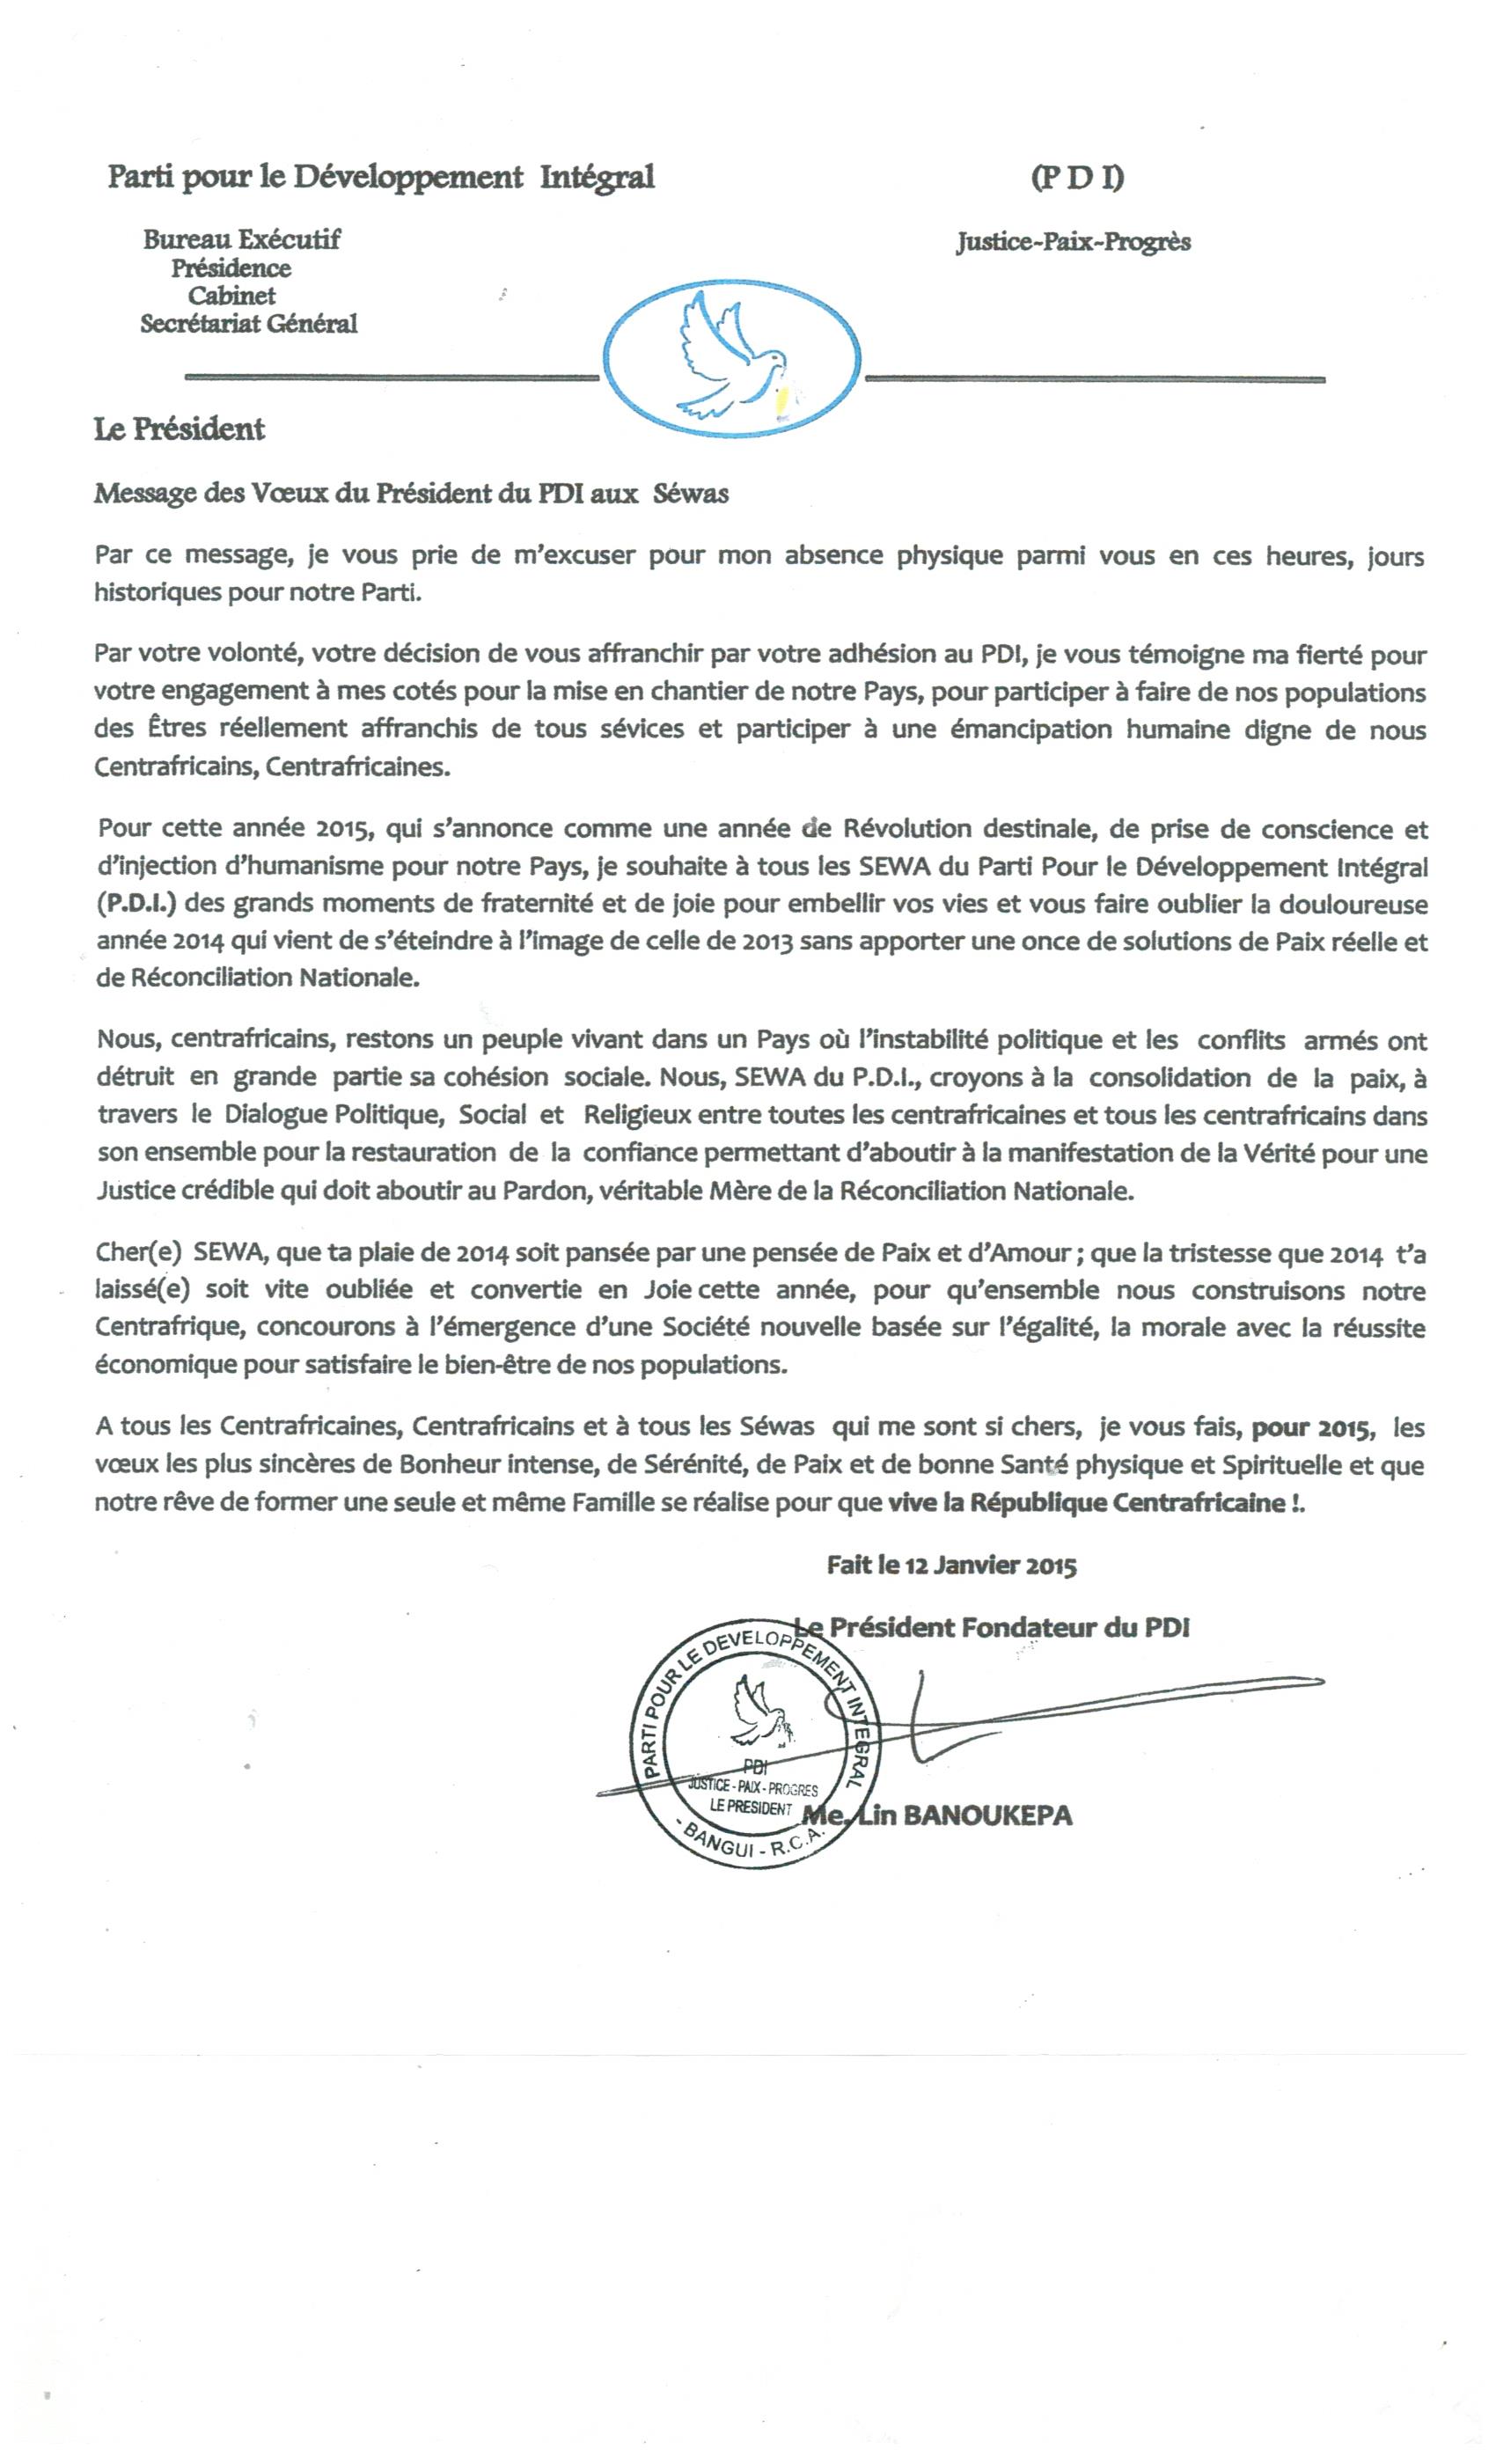 Message des vœux du Président du PDI aux séwas centrafricains